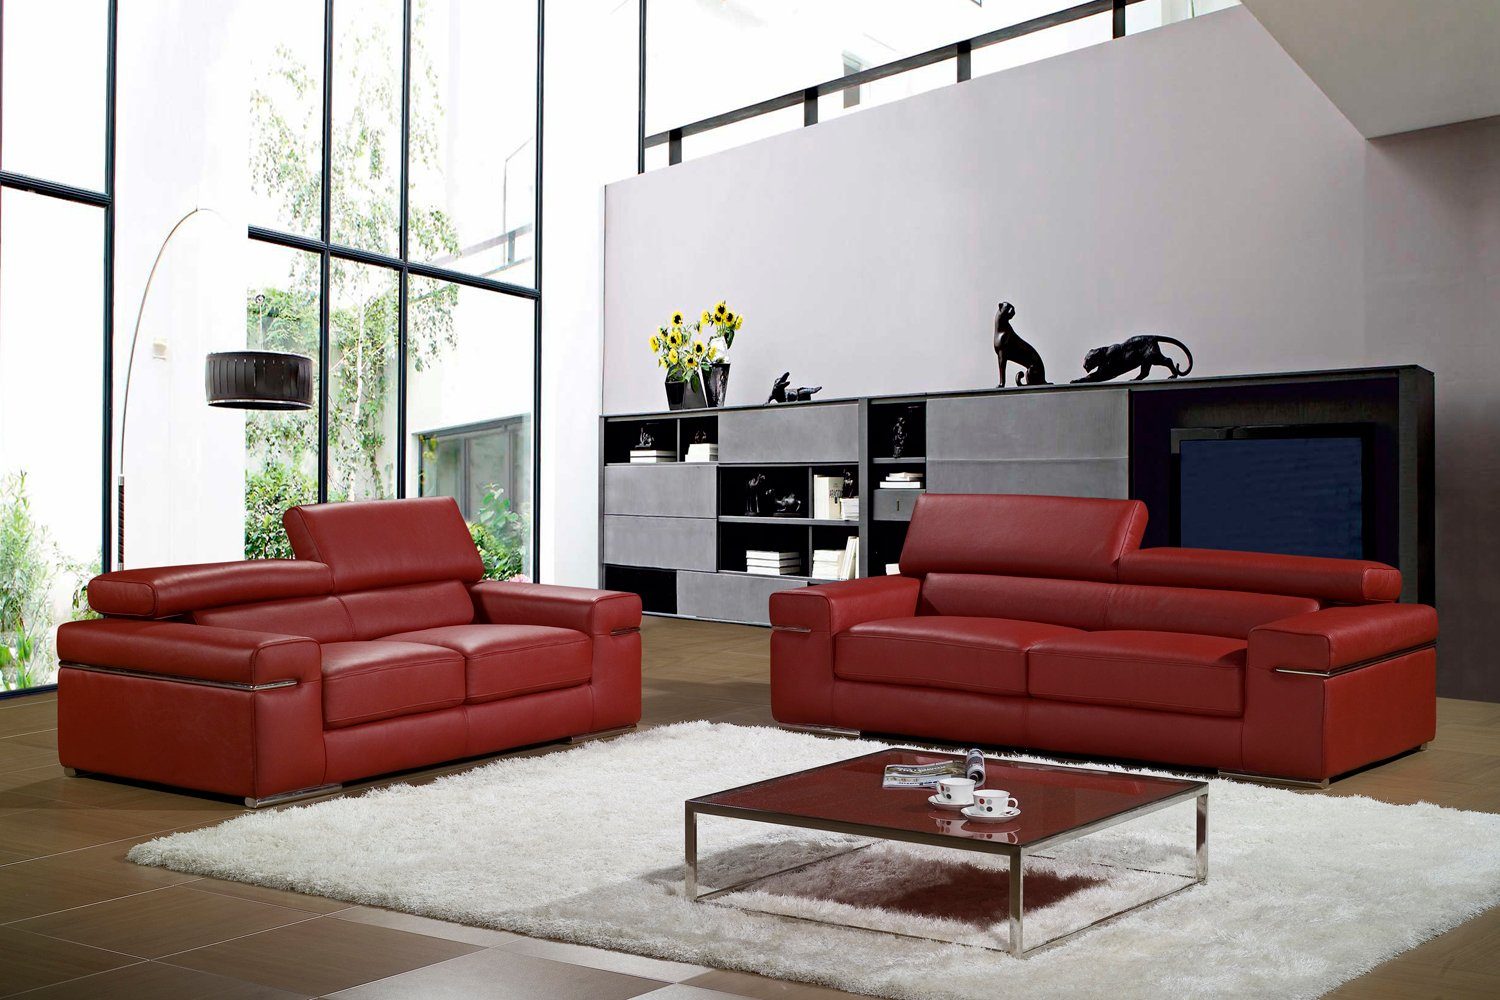 JVmoebel Sofa Weiße Couchgarnitur 3+2+1 luxus Design Sofas Möbel Polster Neu, Made in Europe